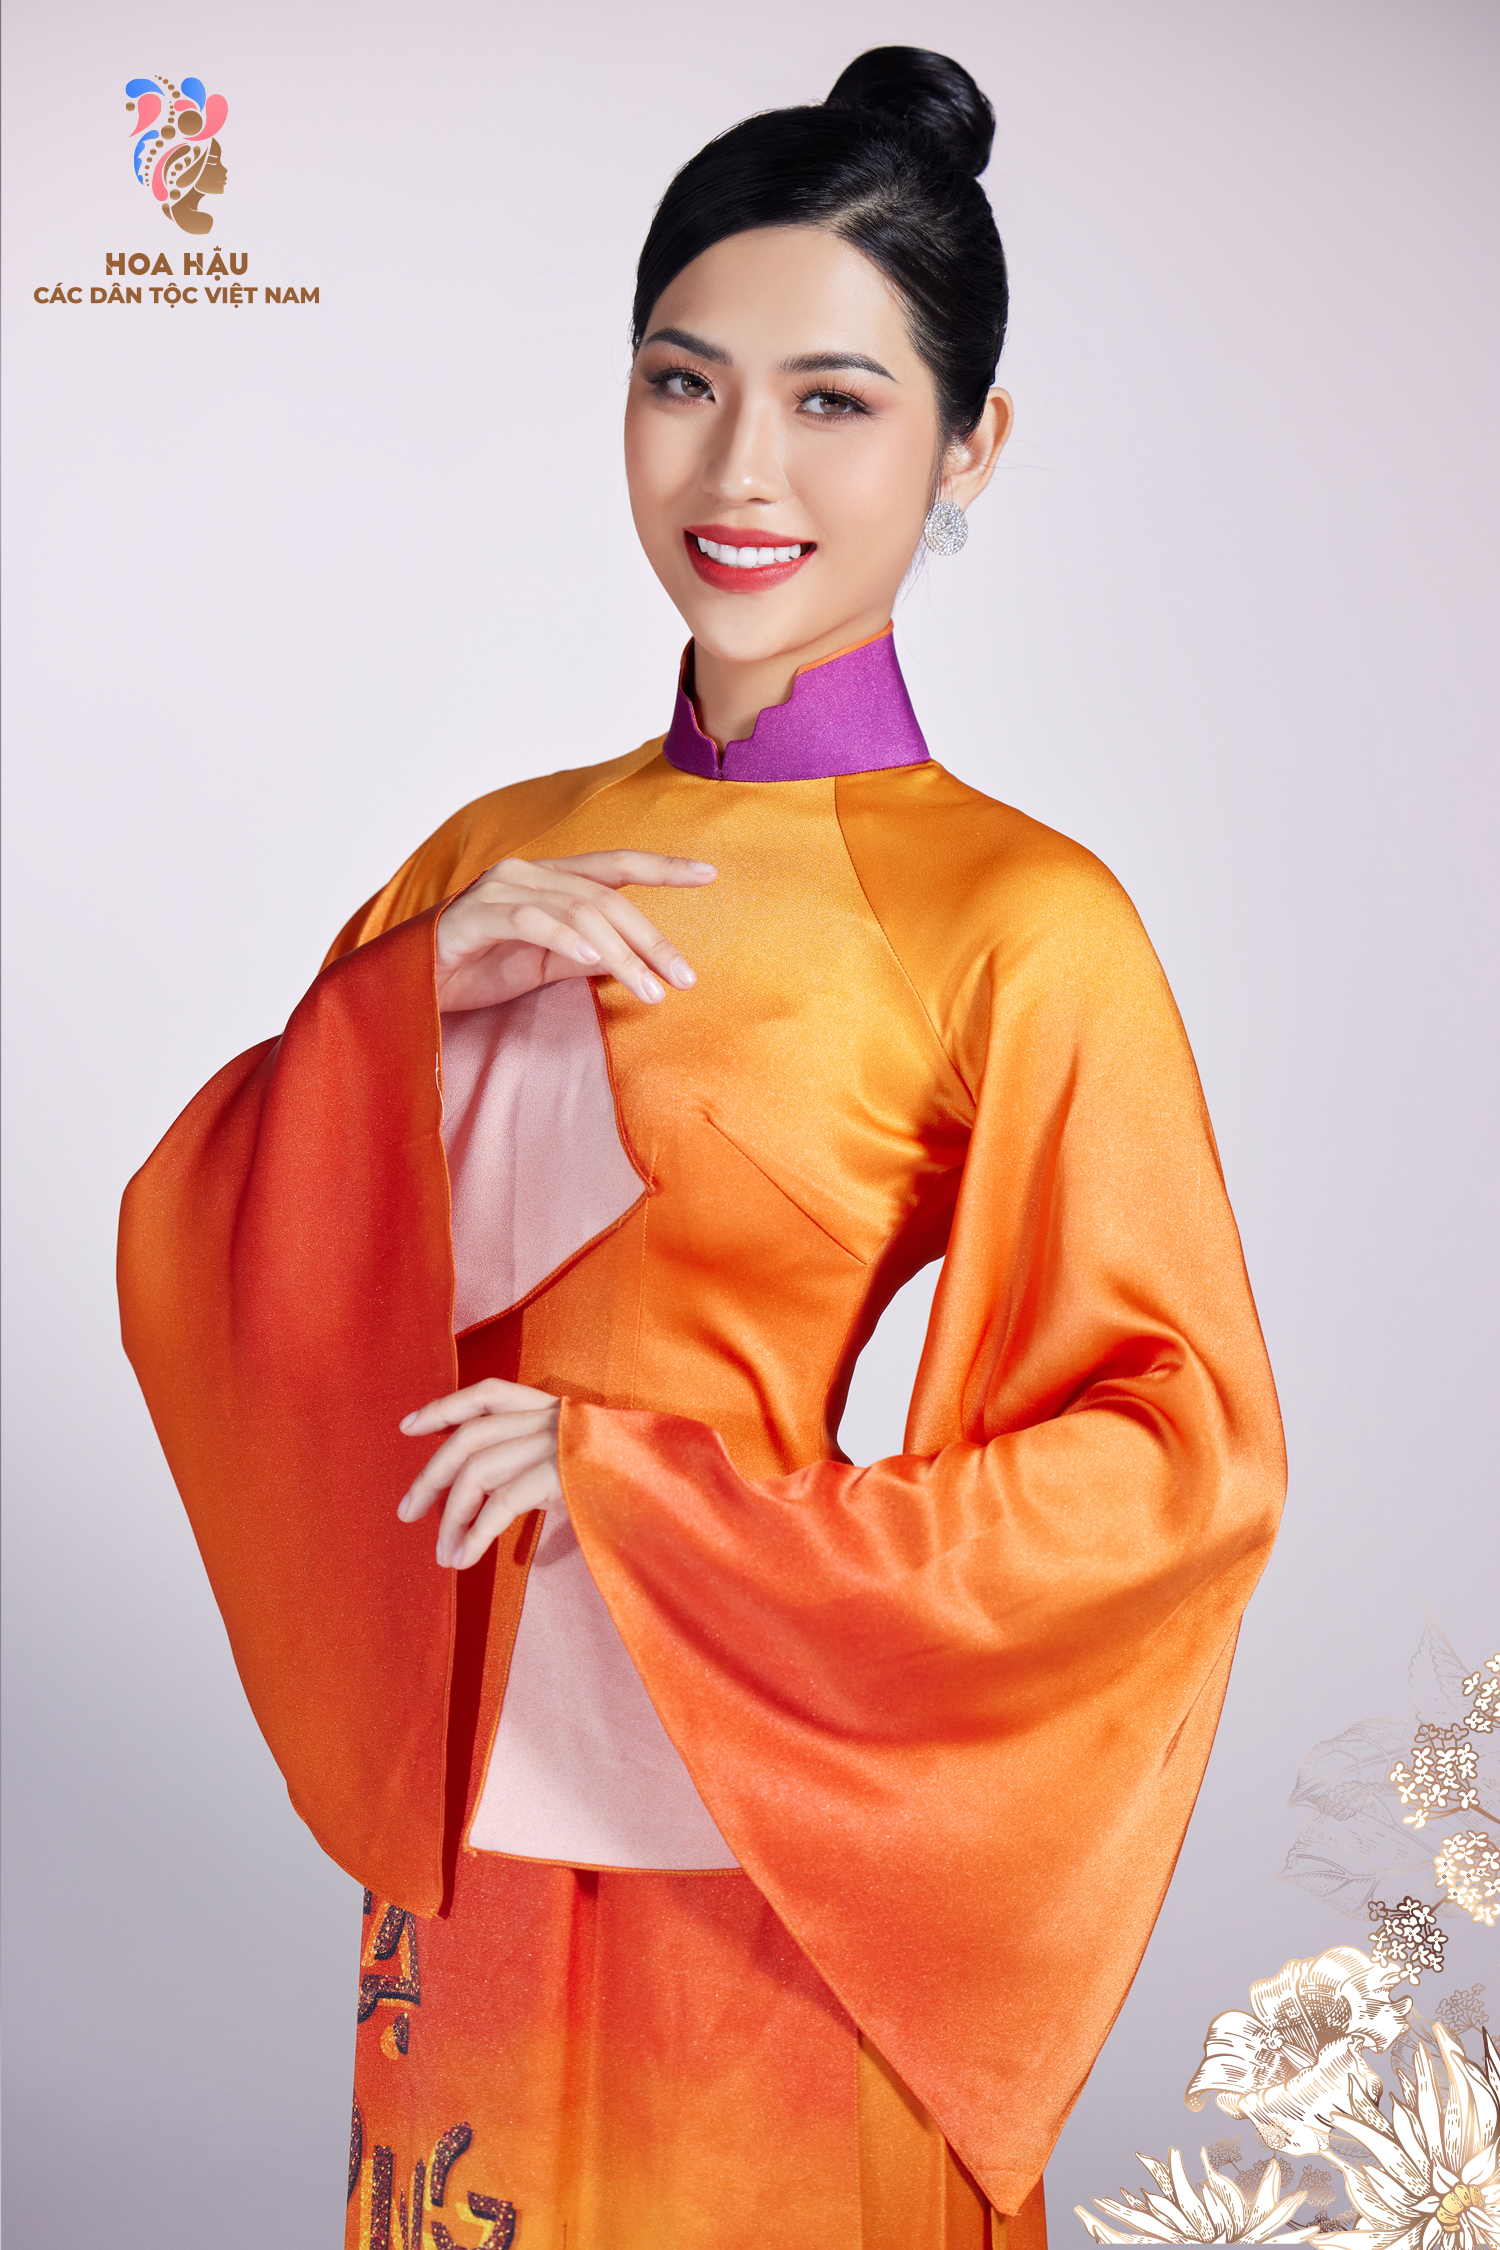 30 thí sinh Hoa hậu các dân tộc Việt Nam duyên dáng trong trang phục truyền thống - Ảnh 4.